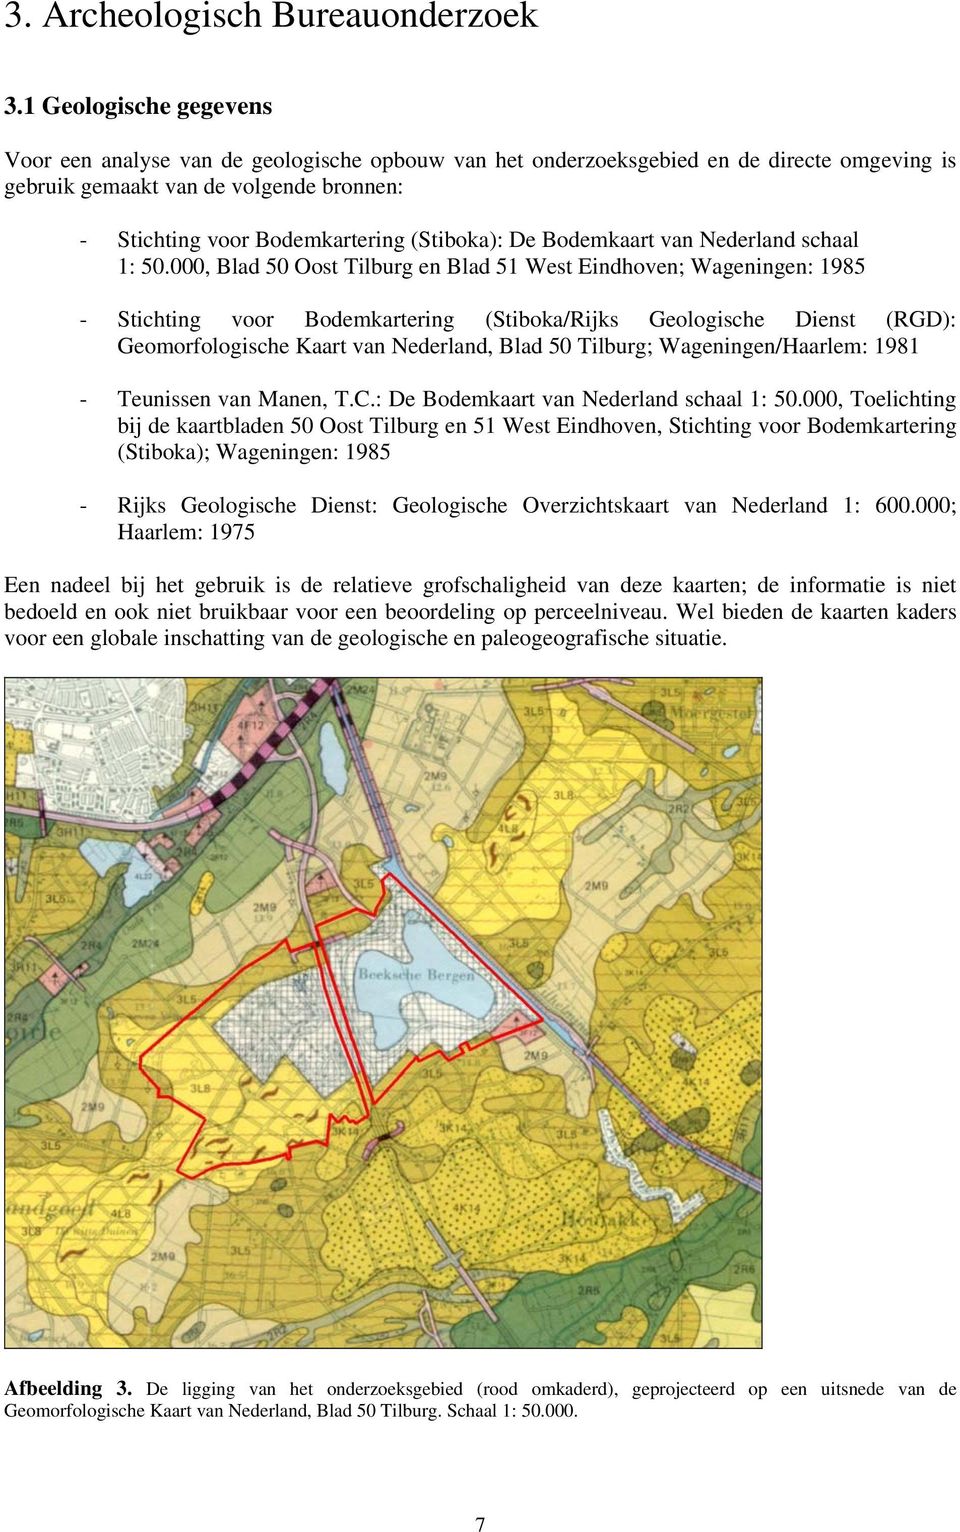 (Stiboka): De Bodemkaart van Nederland schaal 1: 50.